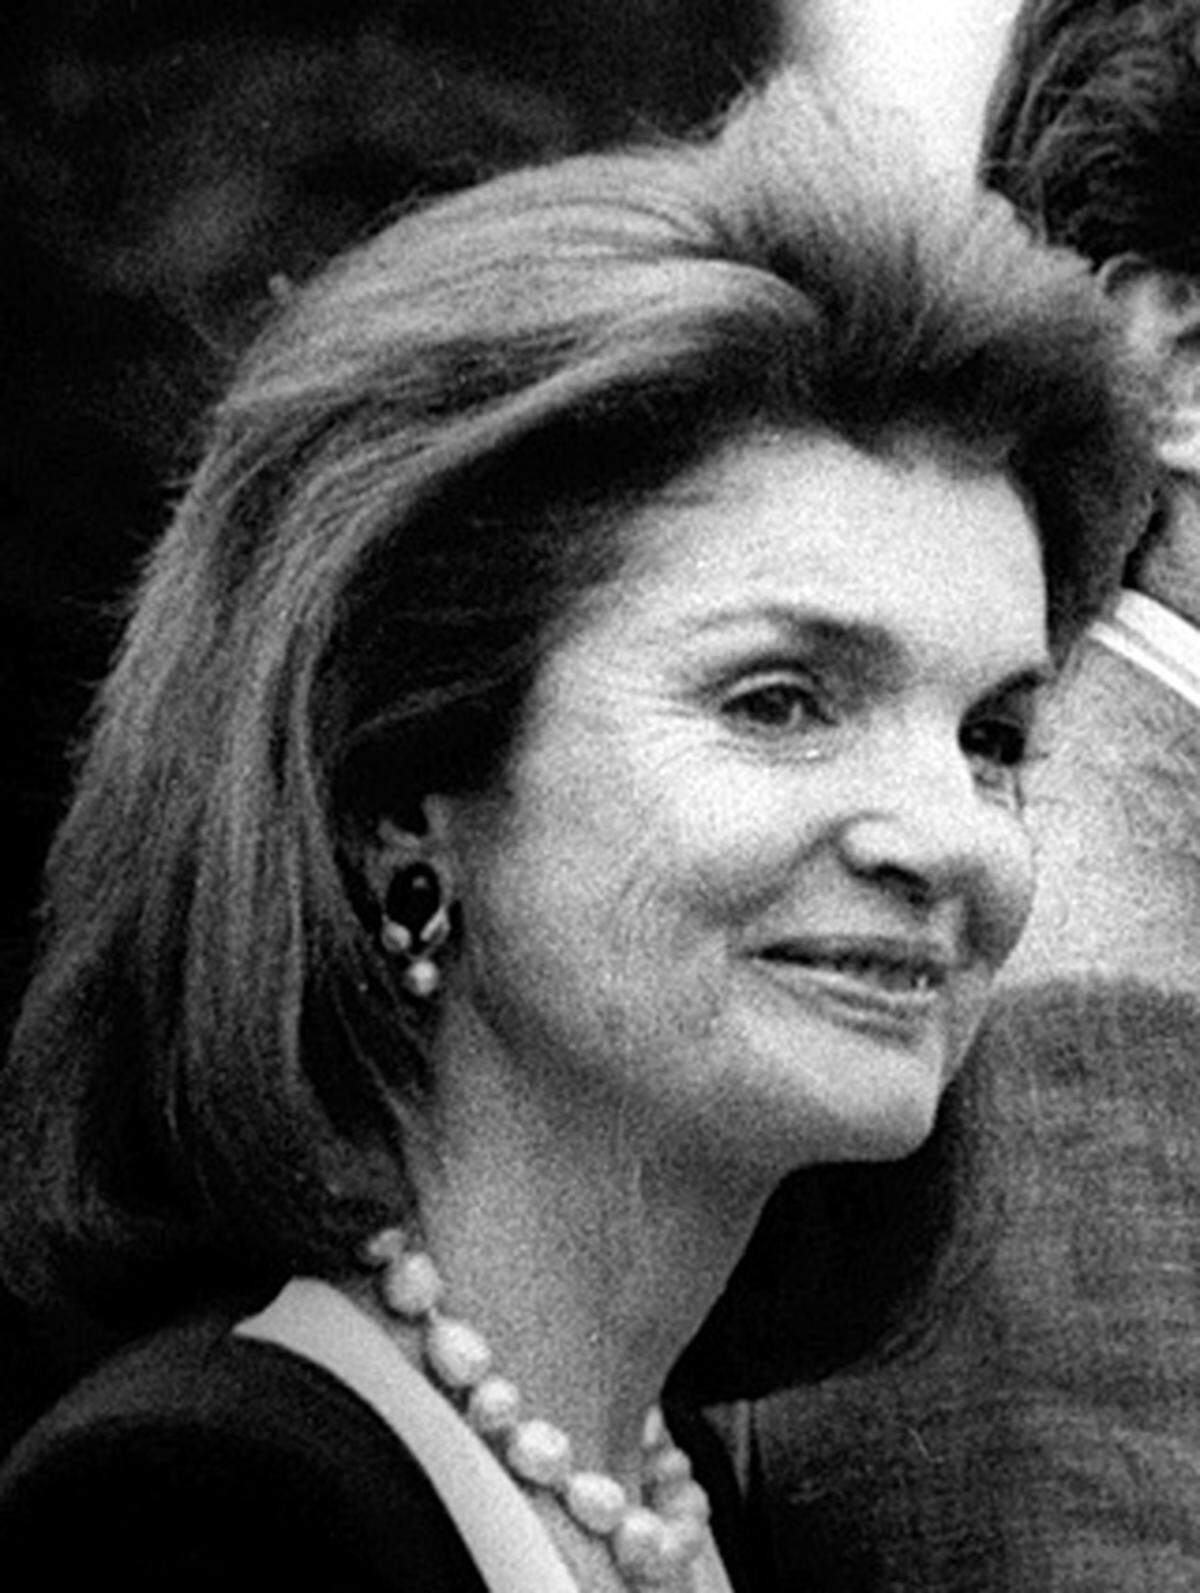 Sie war der Inbegriff einer US-First Lady: Jacqueline Kennedy: hübsch, zurückhaltend, modisch adrett und um die Einrichtung des Weißen Hauses bemüht. Besonders ihr Modestil ging um die Welt, sie wurde tausendfach kopiert - noch heute gilt der Stil der "Jackie O." (nach ihrem zweiten Ehemann Onassis) als klassisch und modern.